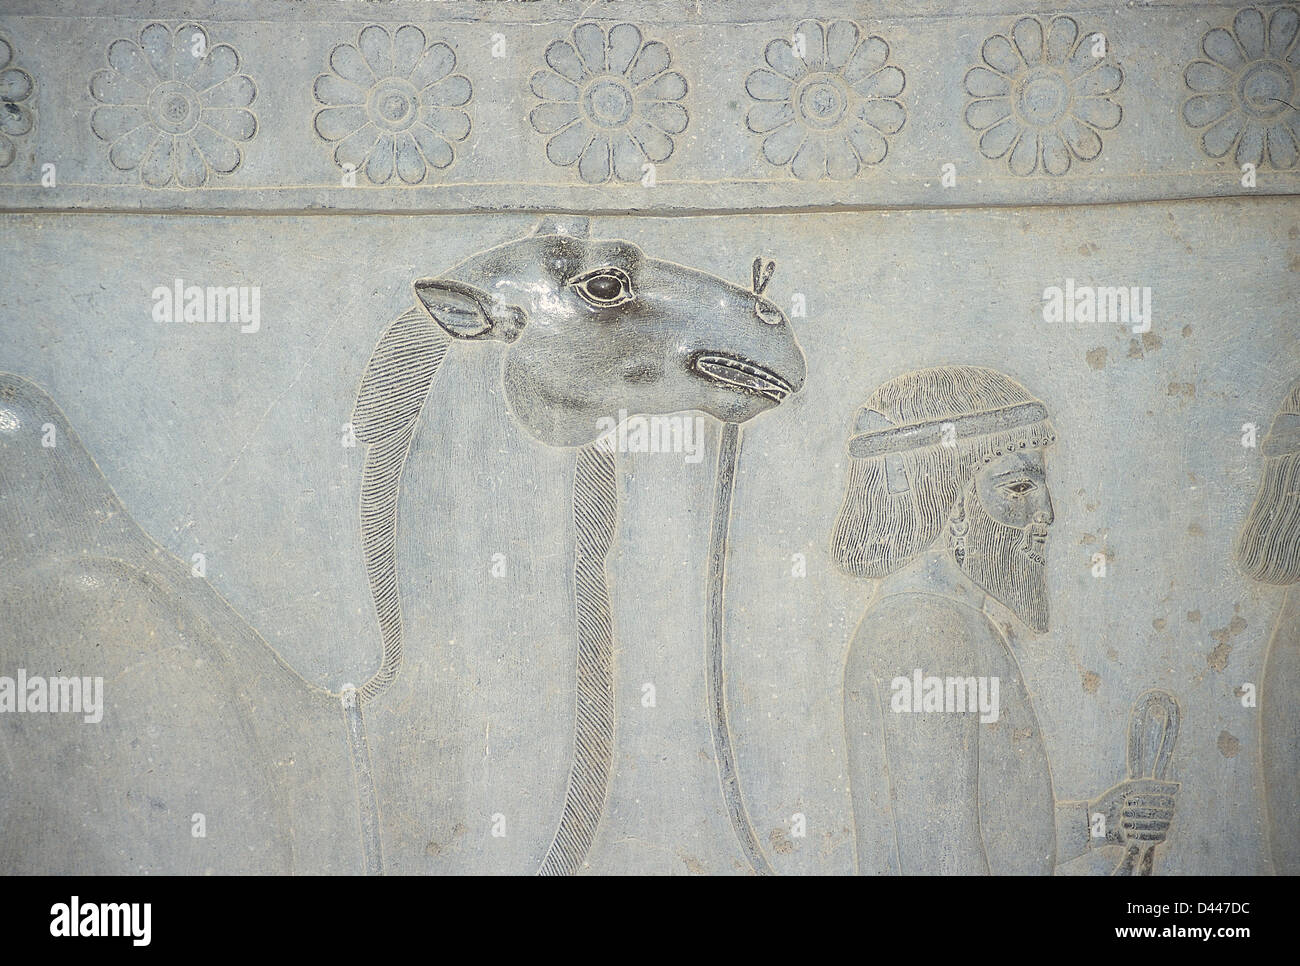 Impero achemenide (550-330 a.C.). Persepolis. Rilievo delle scale delle Apadana. Dettaglio. Delegazione: Bactria offerta. Foto Stock